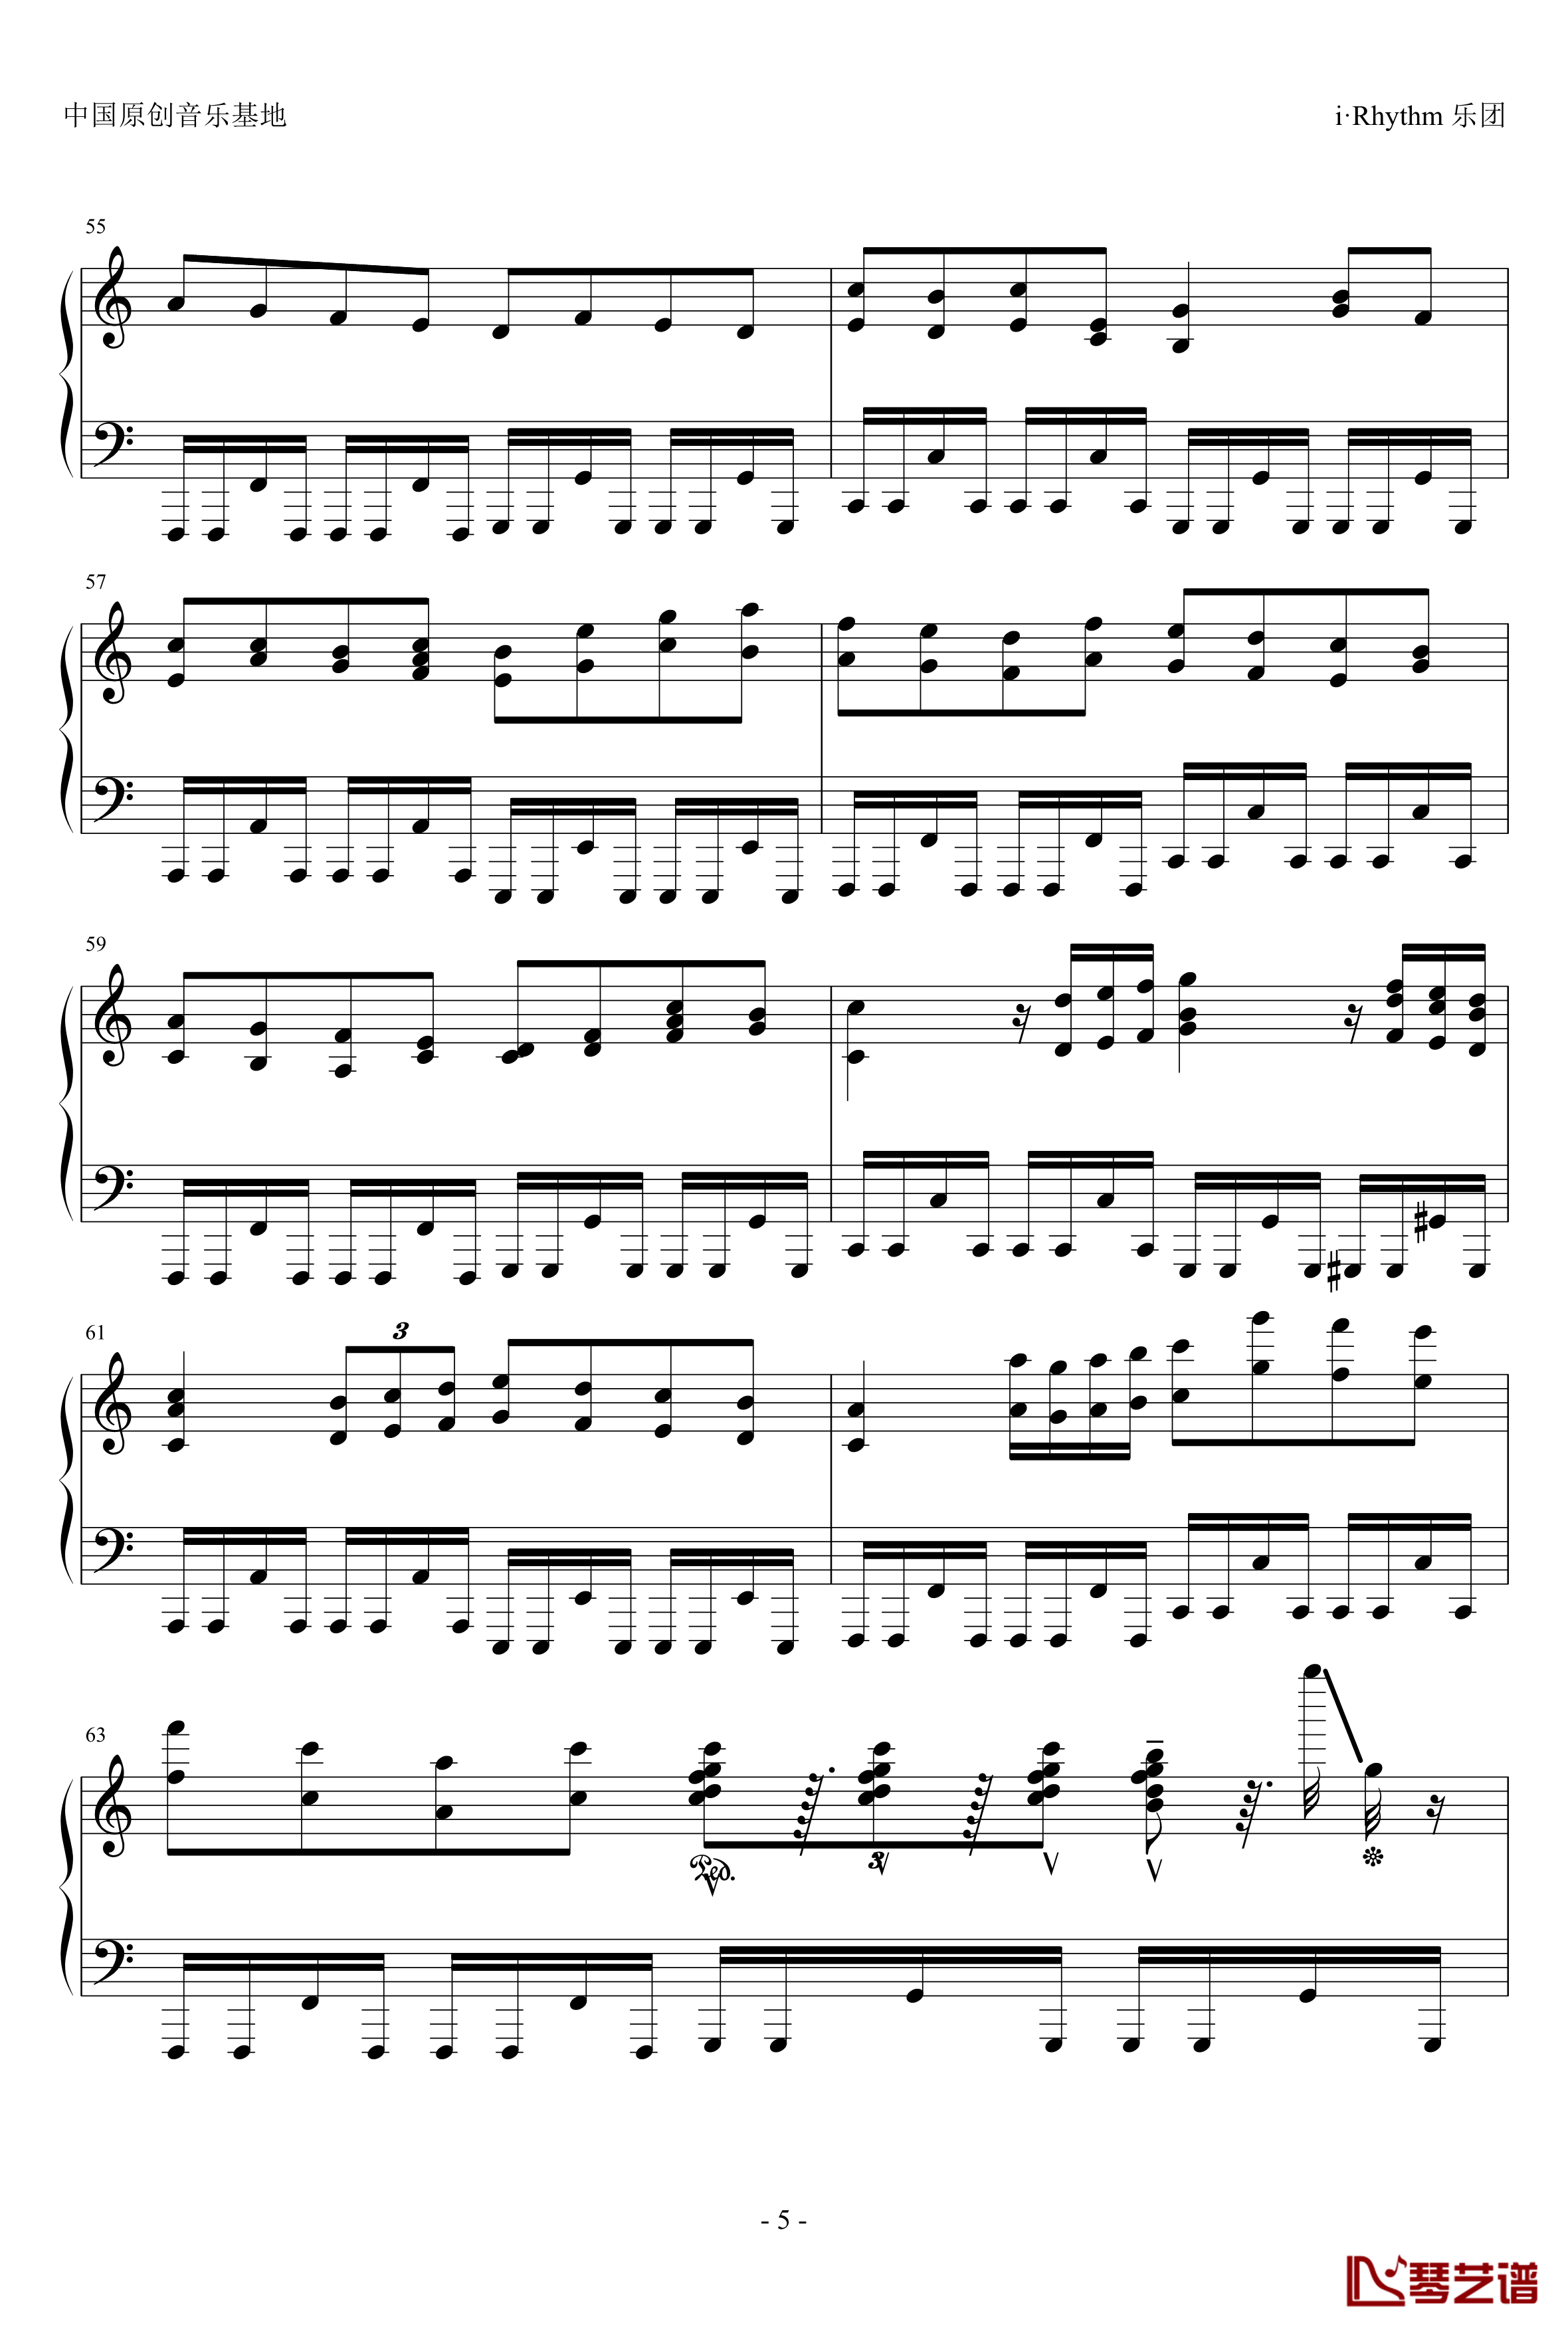 卡农钢琴谱-疯狂版-帕赫贝尔-Pachelbel5